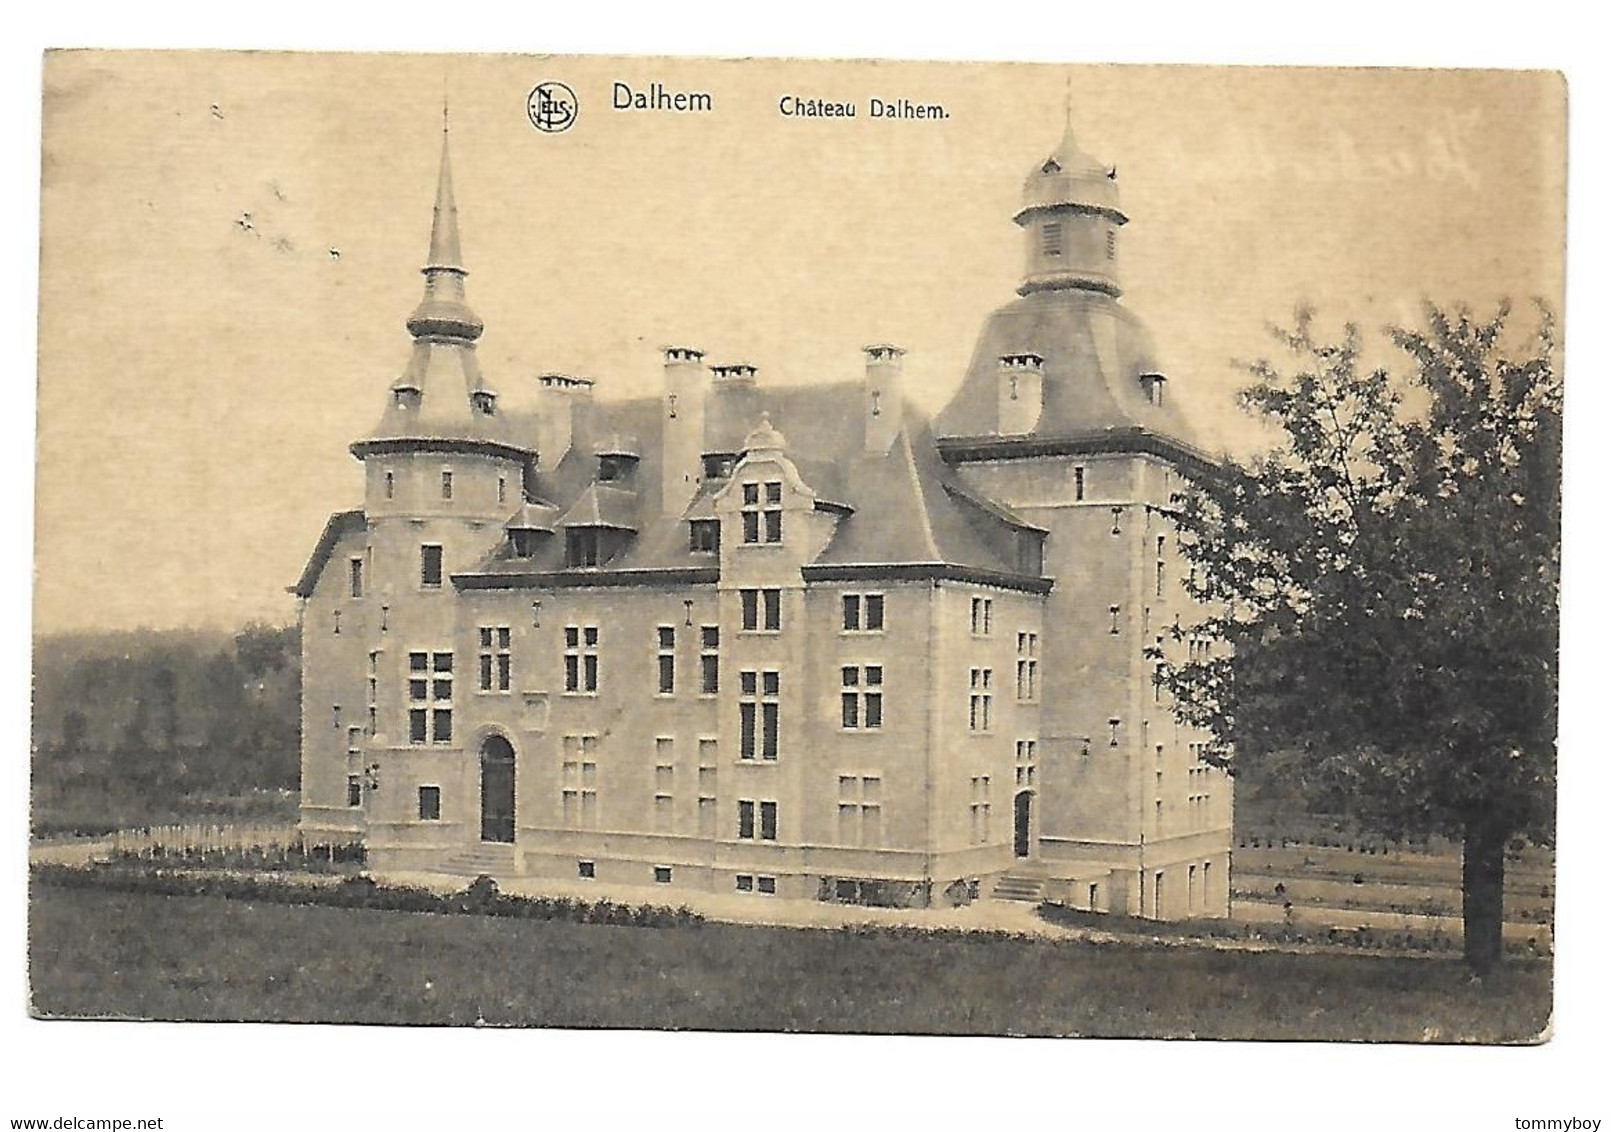 Dalhem Château - Dalhem